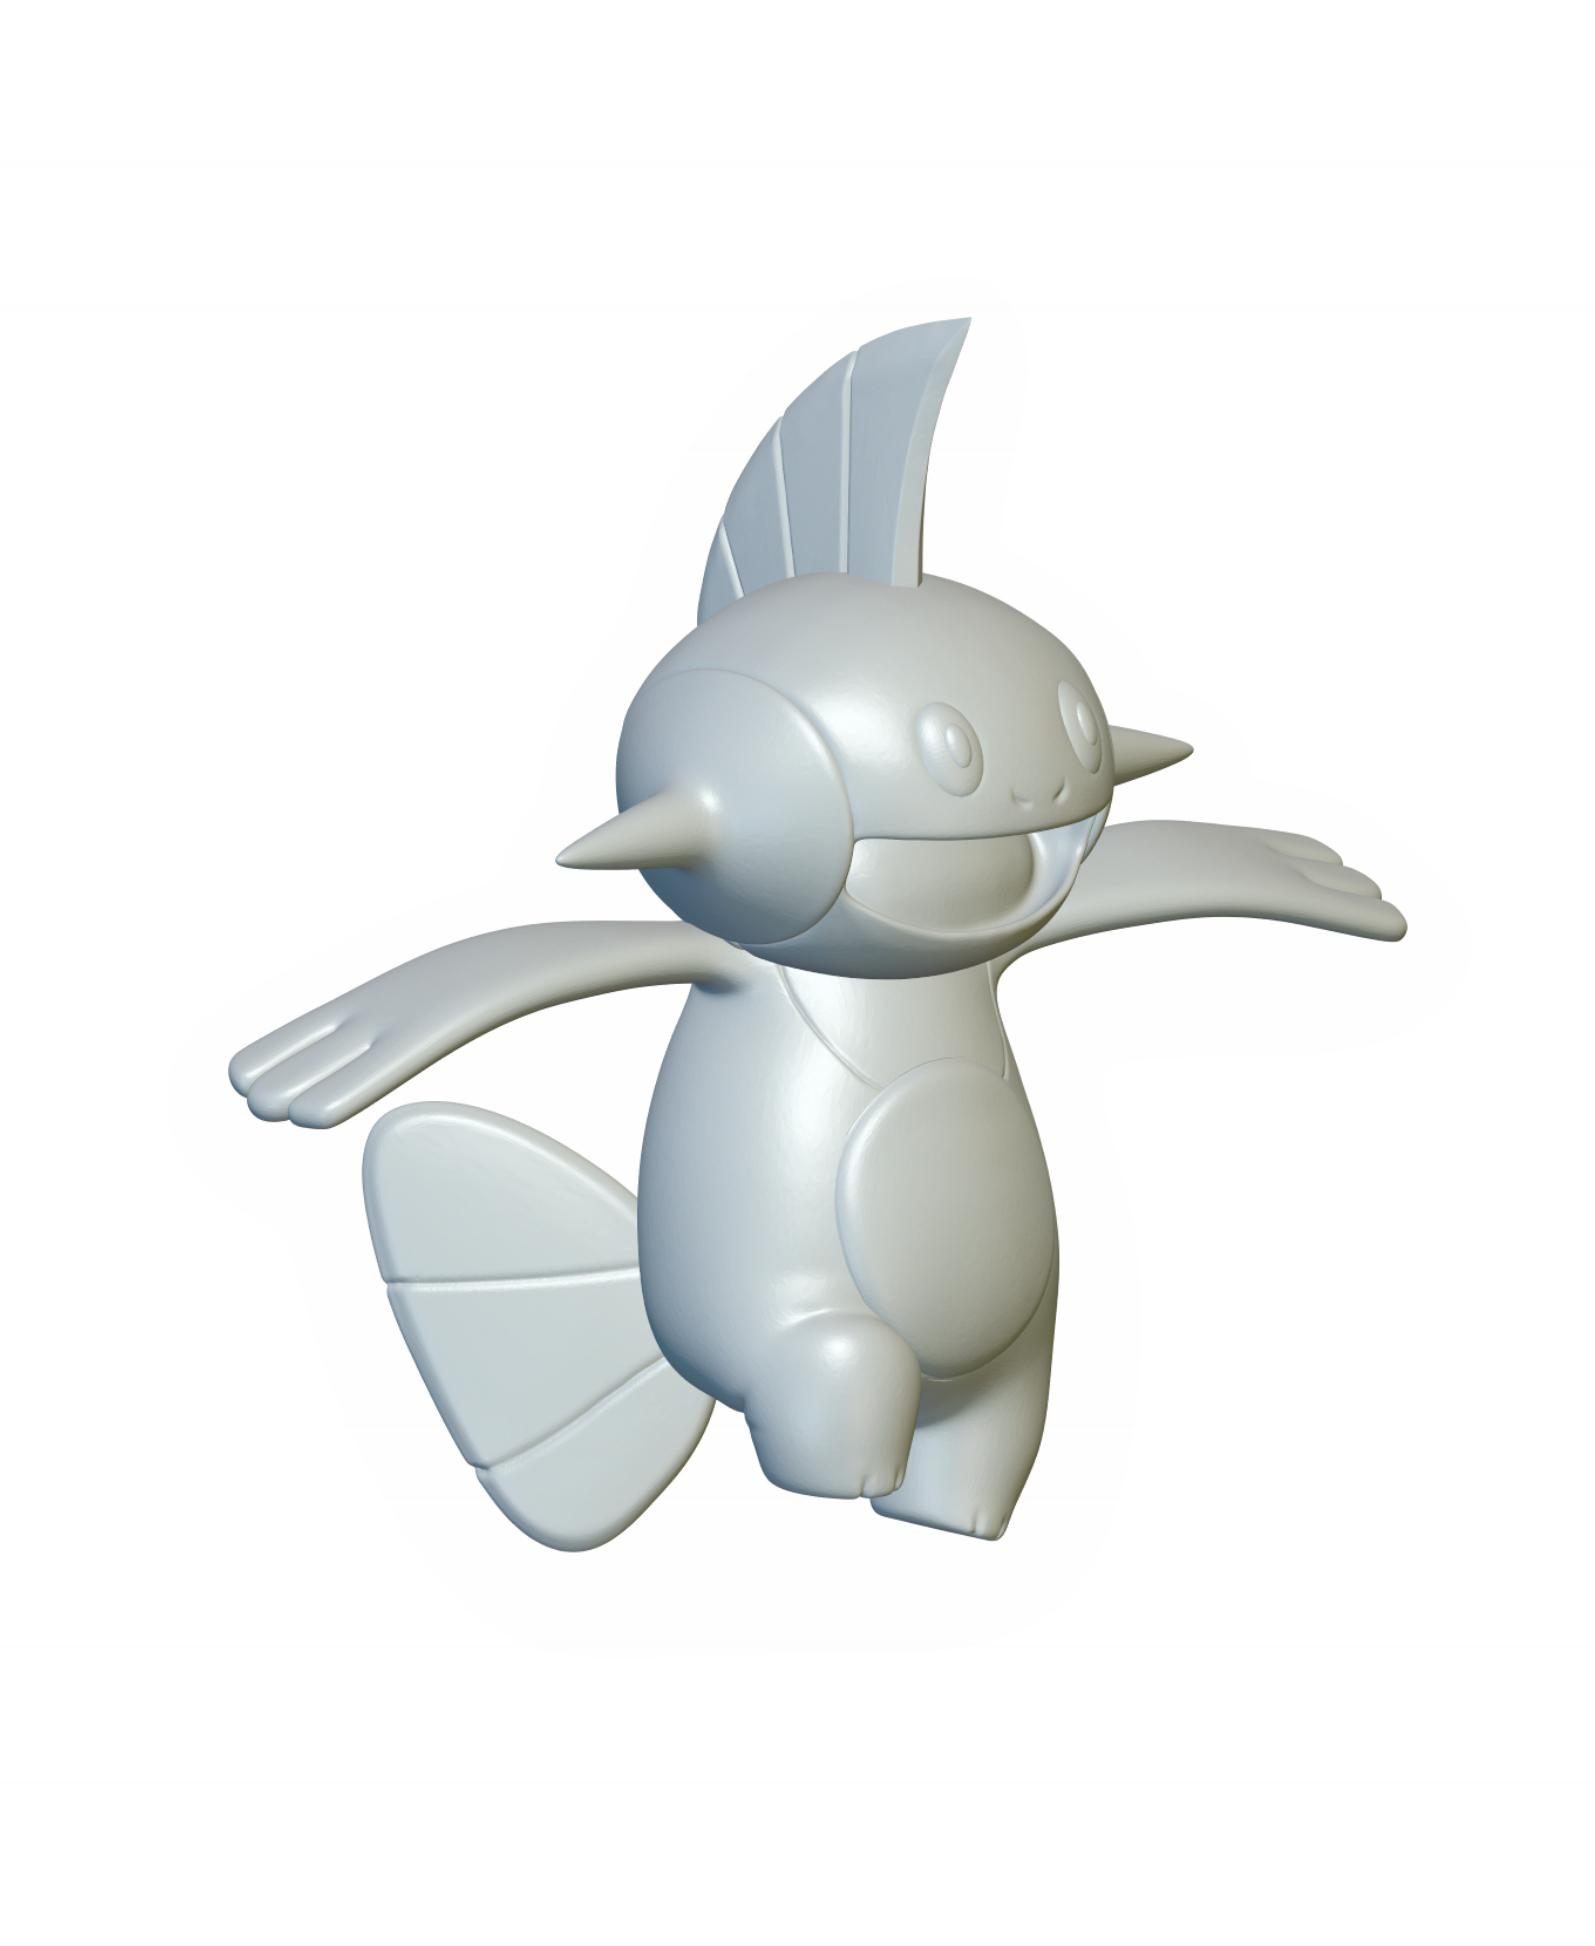 Pokemon Marshtomp #259 - Optimized for 3D Printing 3d model